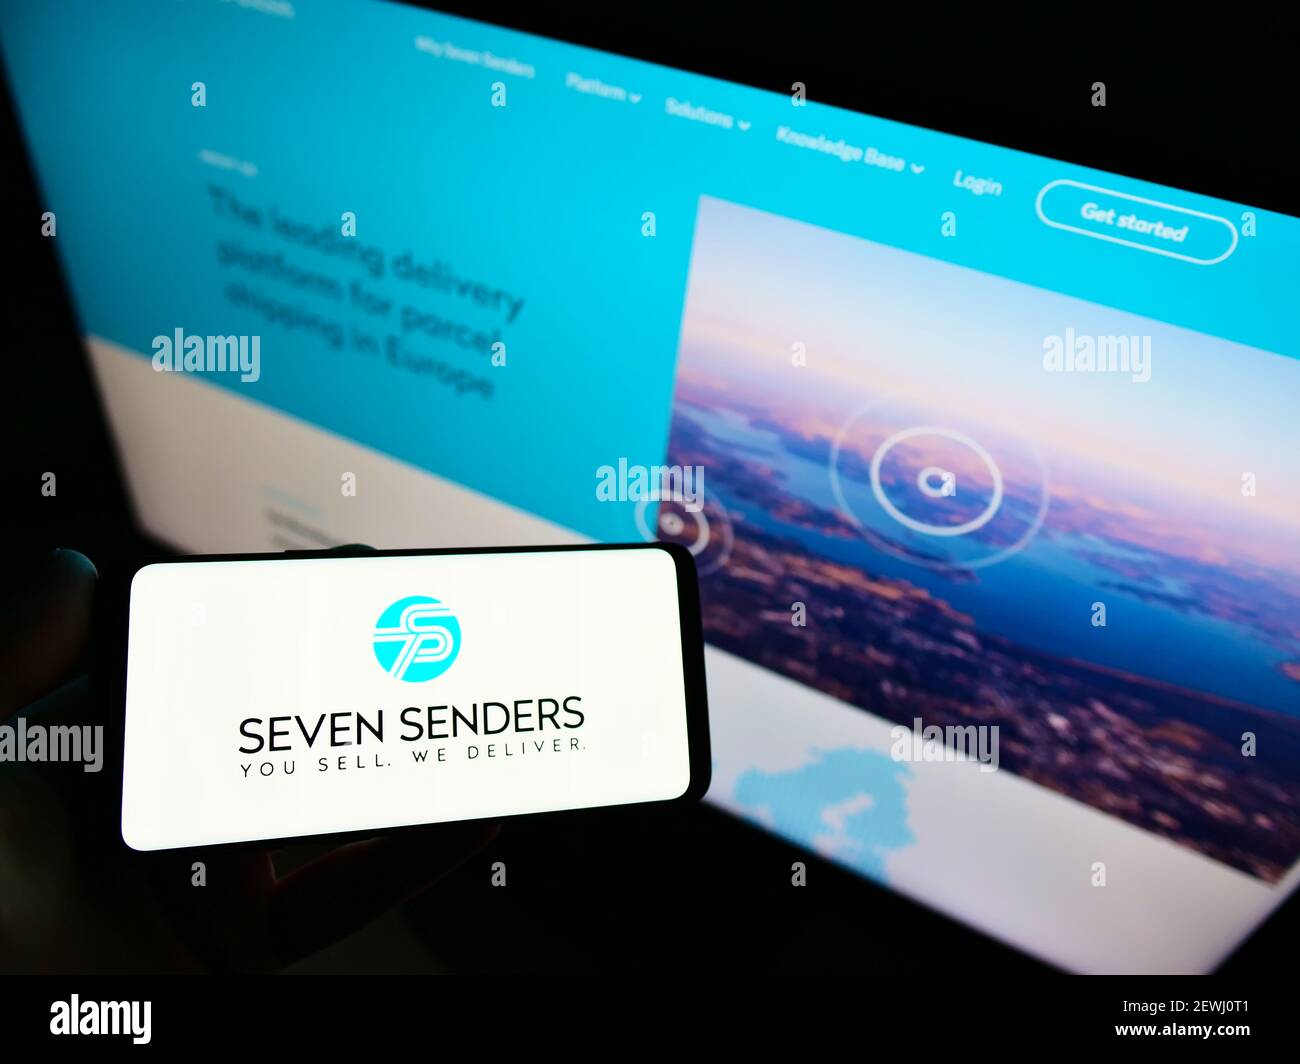 Personne tenant un smartphone avec le logo de la plate-forme de livraison allemande Seven Senders GmbH sur l'écran devant le site Web. Mise au point sur l'affichage du téléphone. Banque D'Images